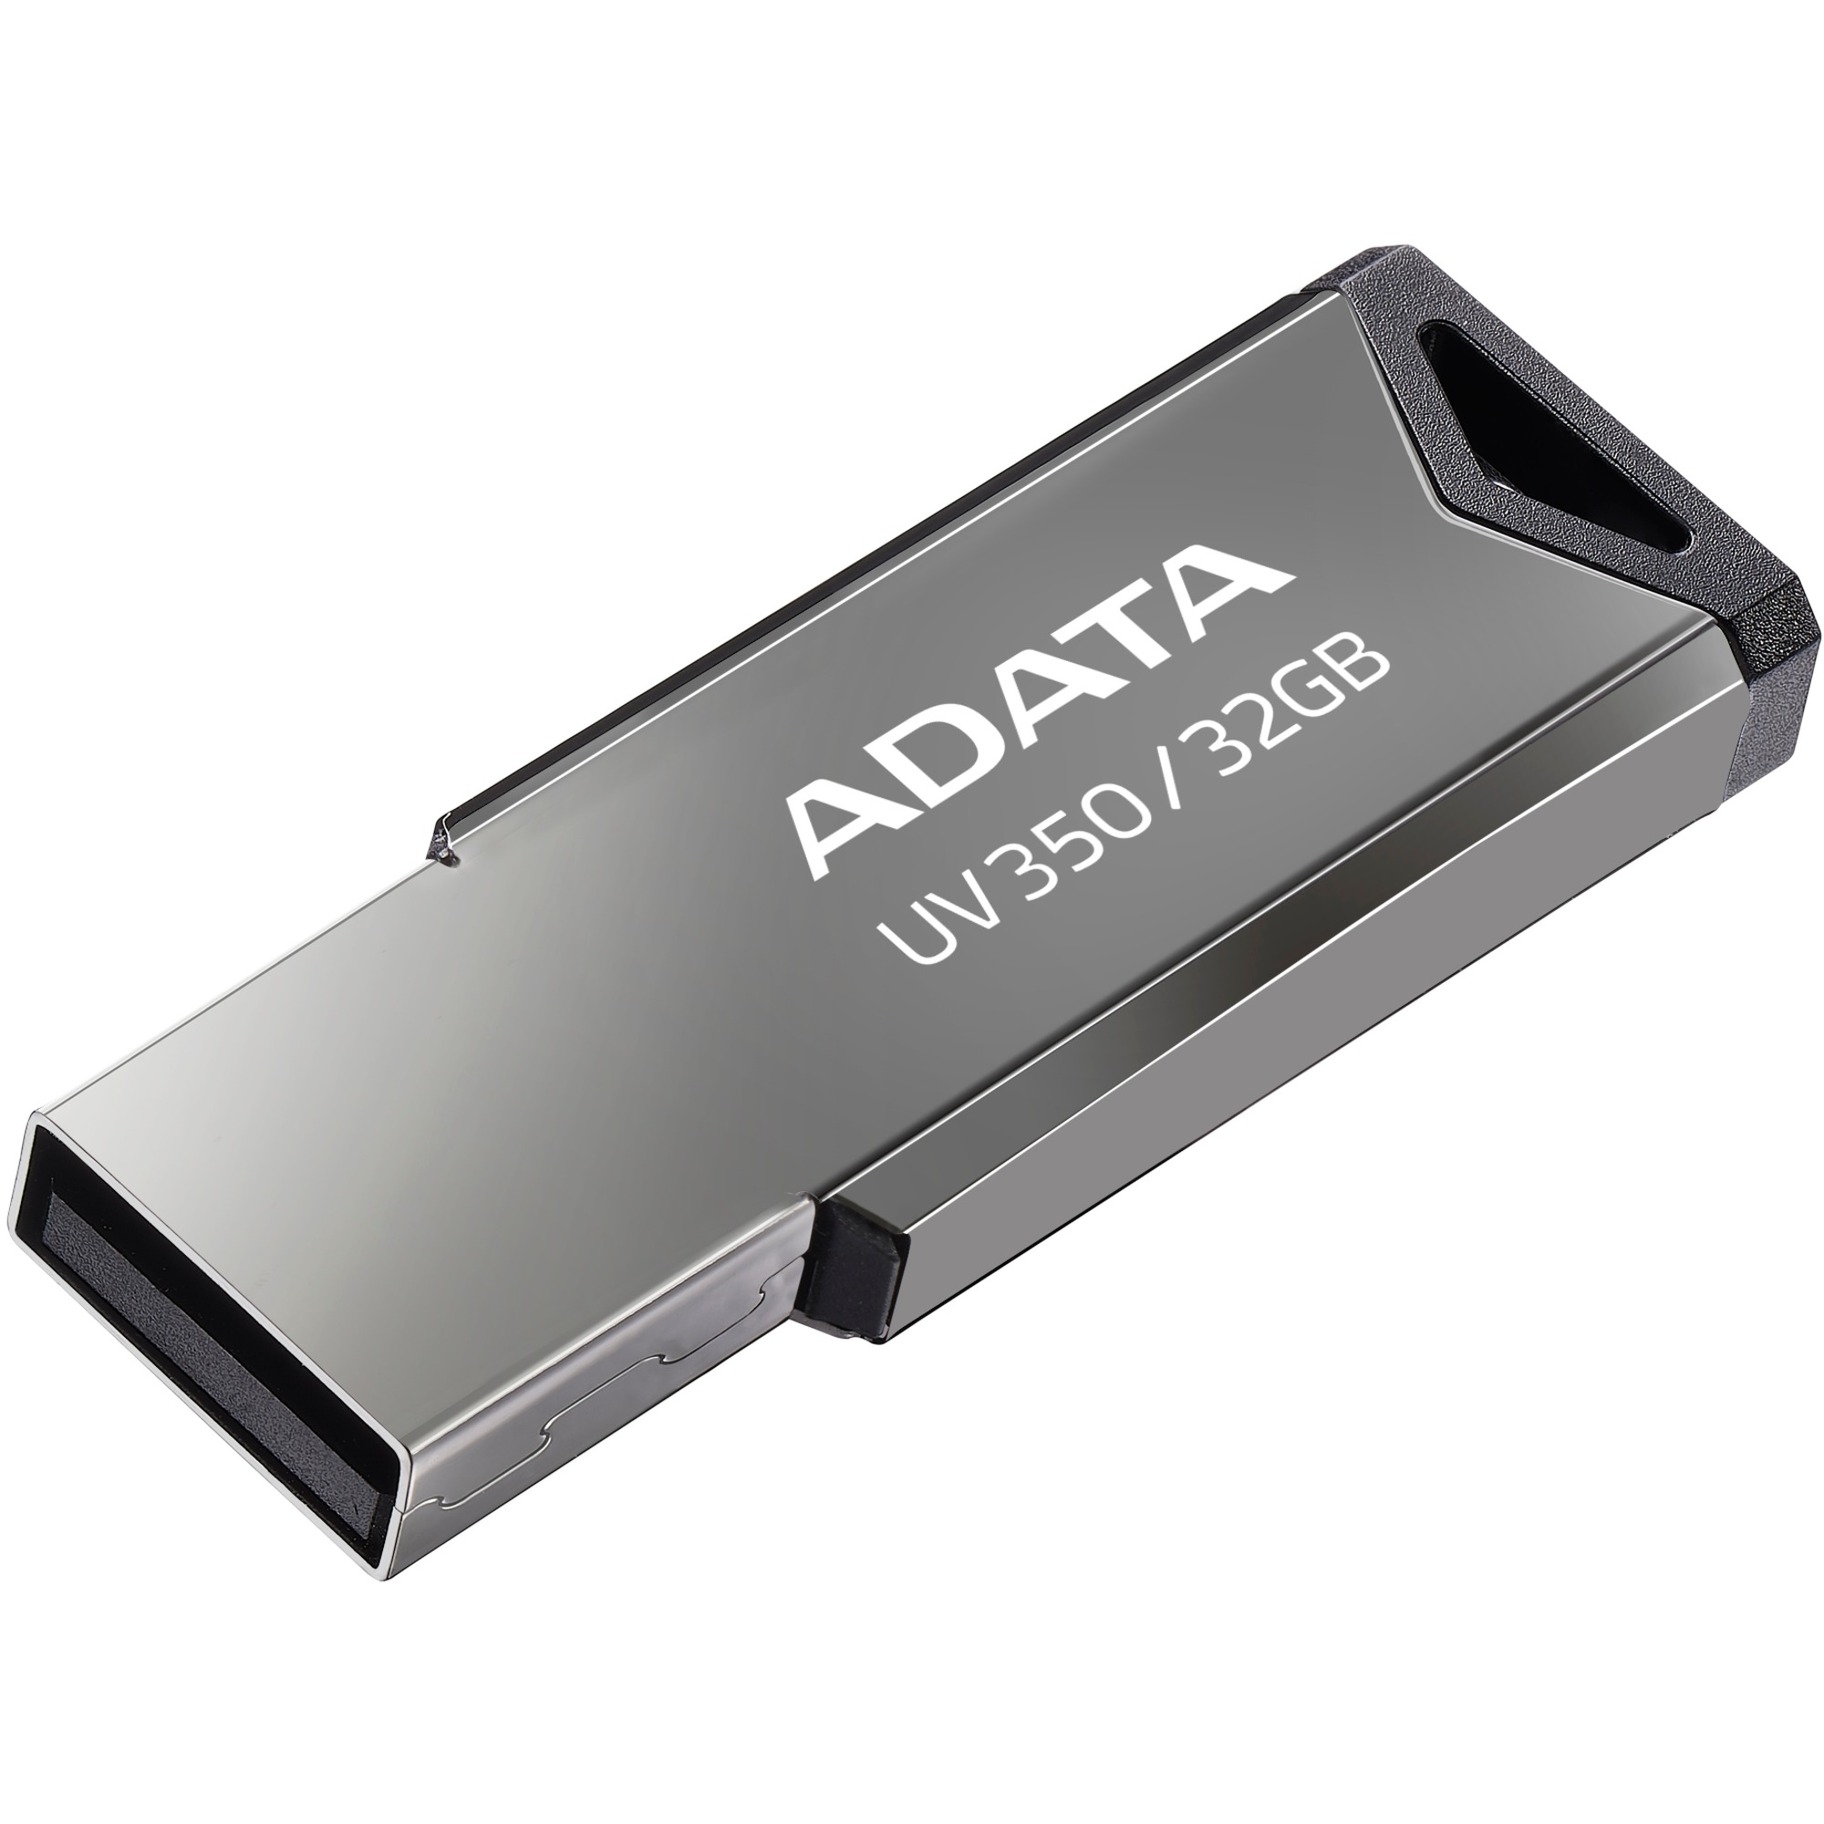 Image of Alternate - UV350 32 GB, USB-Stick online einkaufen bei Alternate